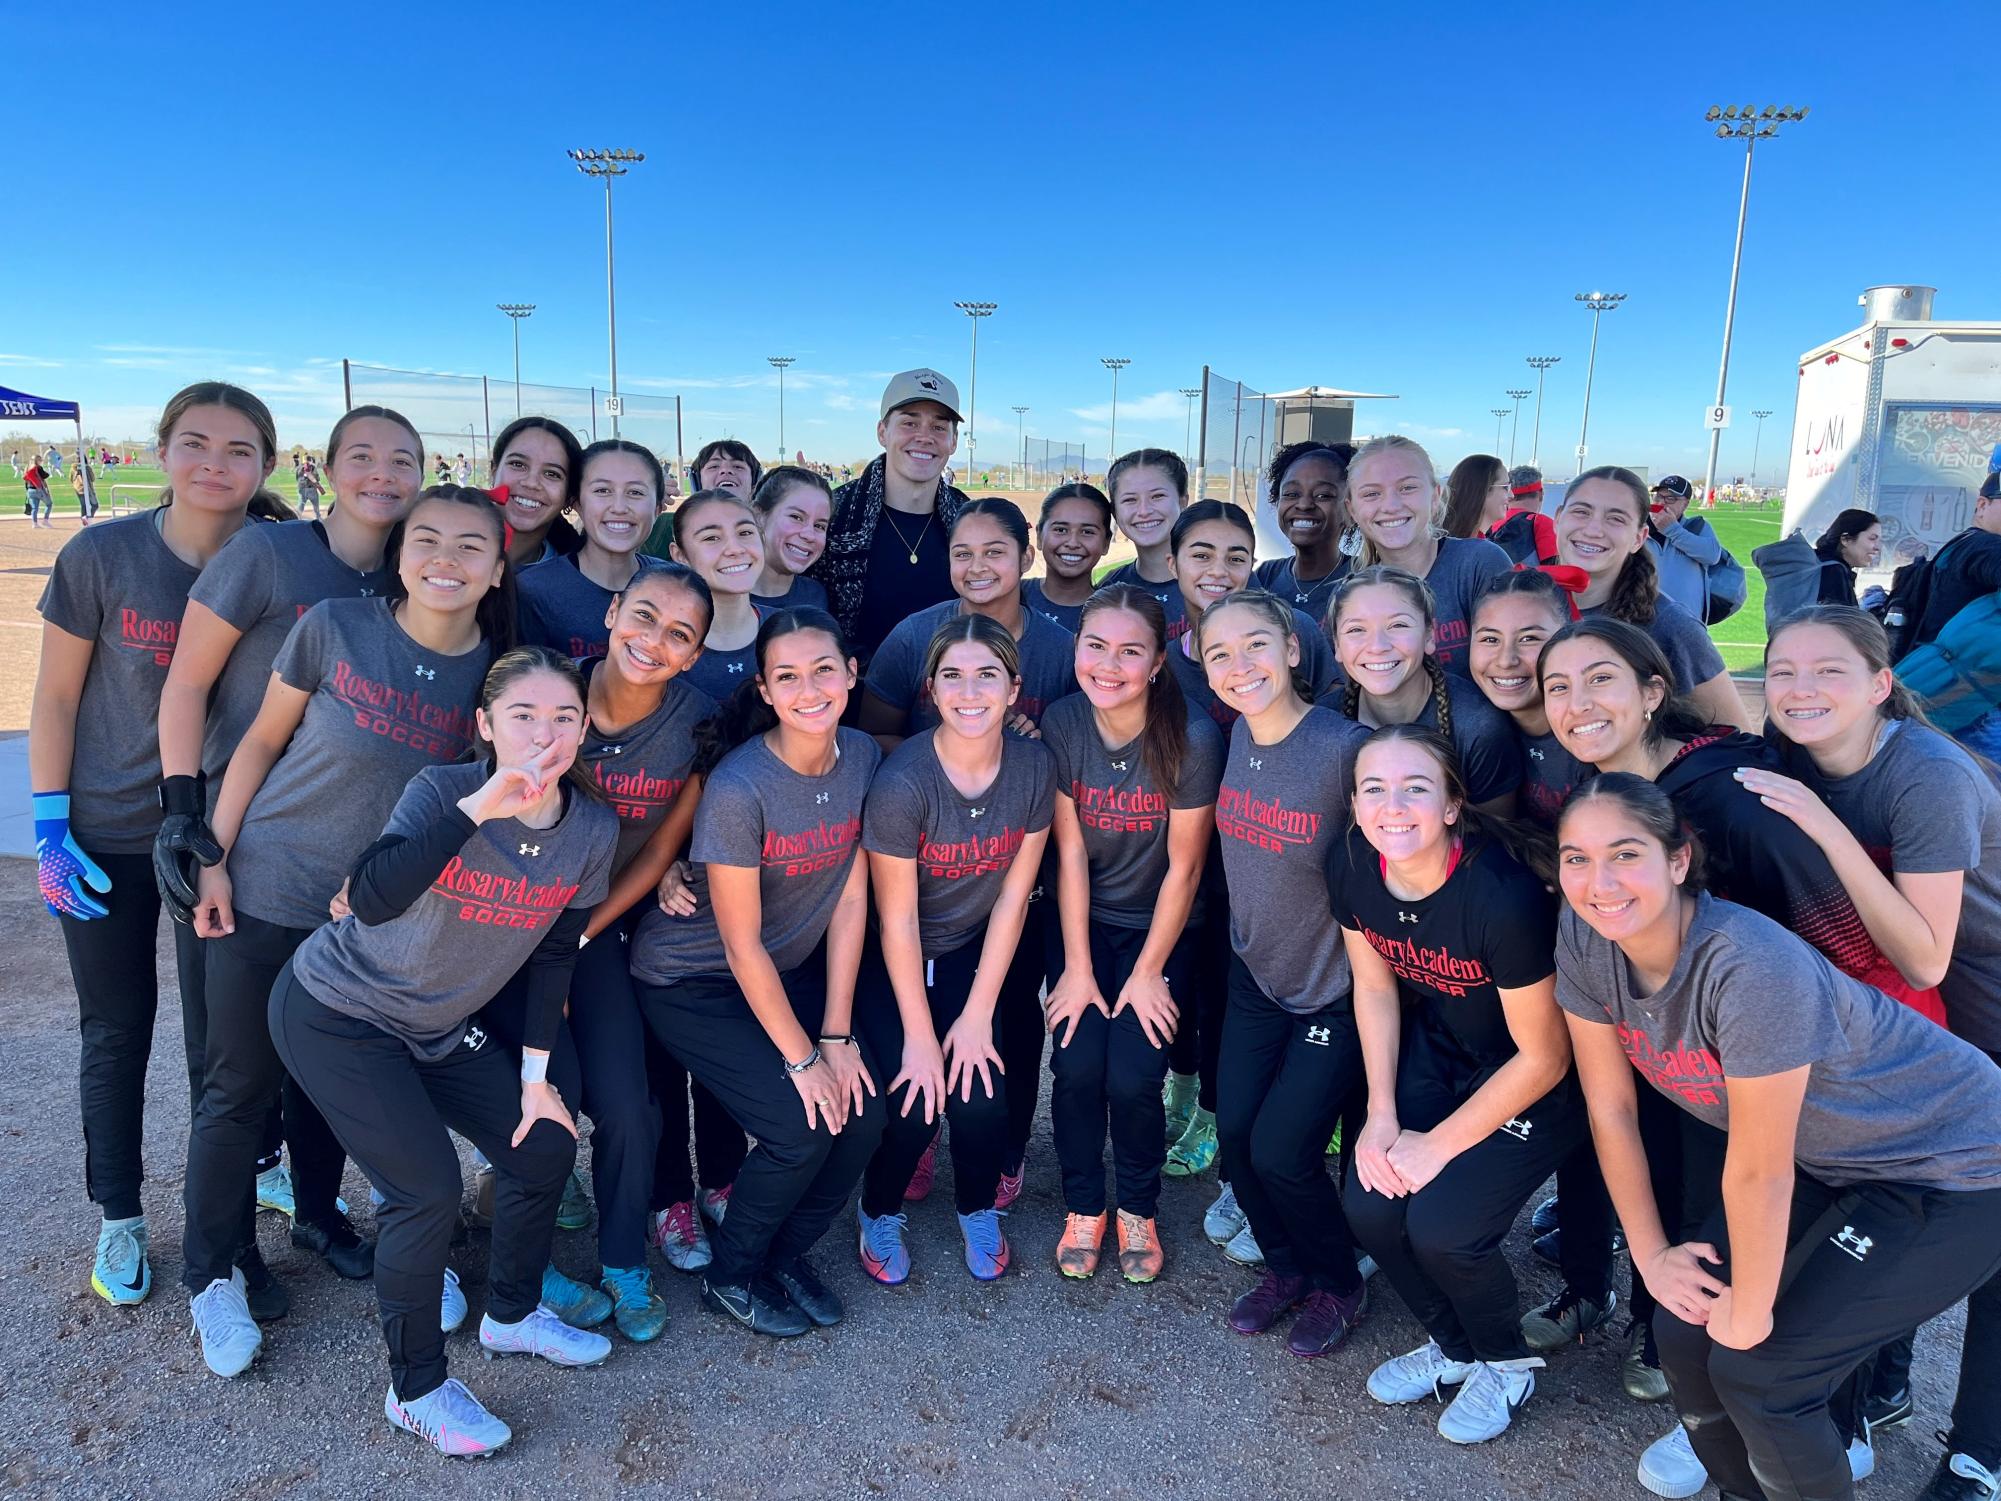 Rosary Varsity Soccer Team Wins Arizona Showcase for Second Consecutive Year